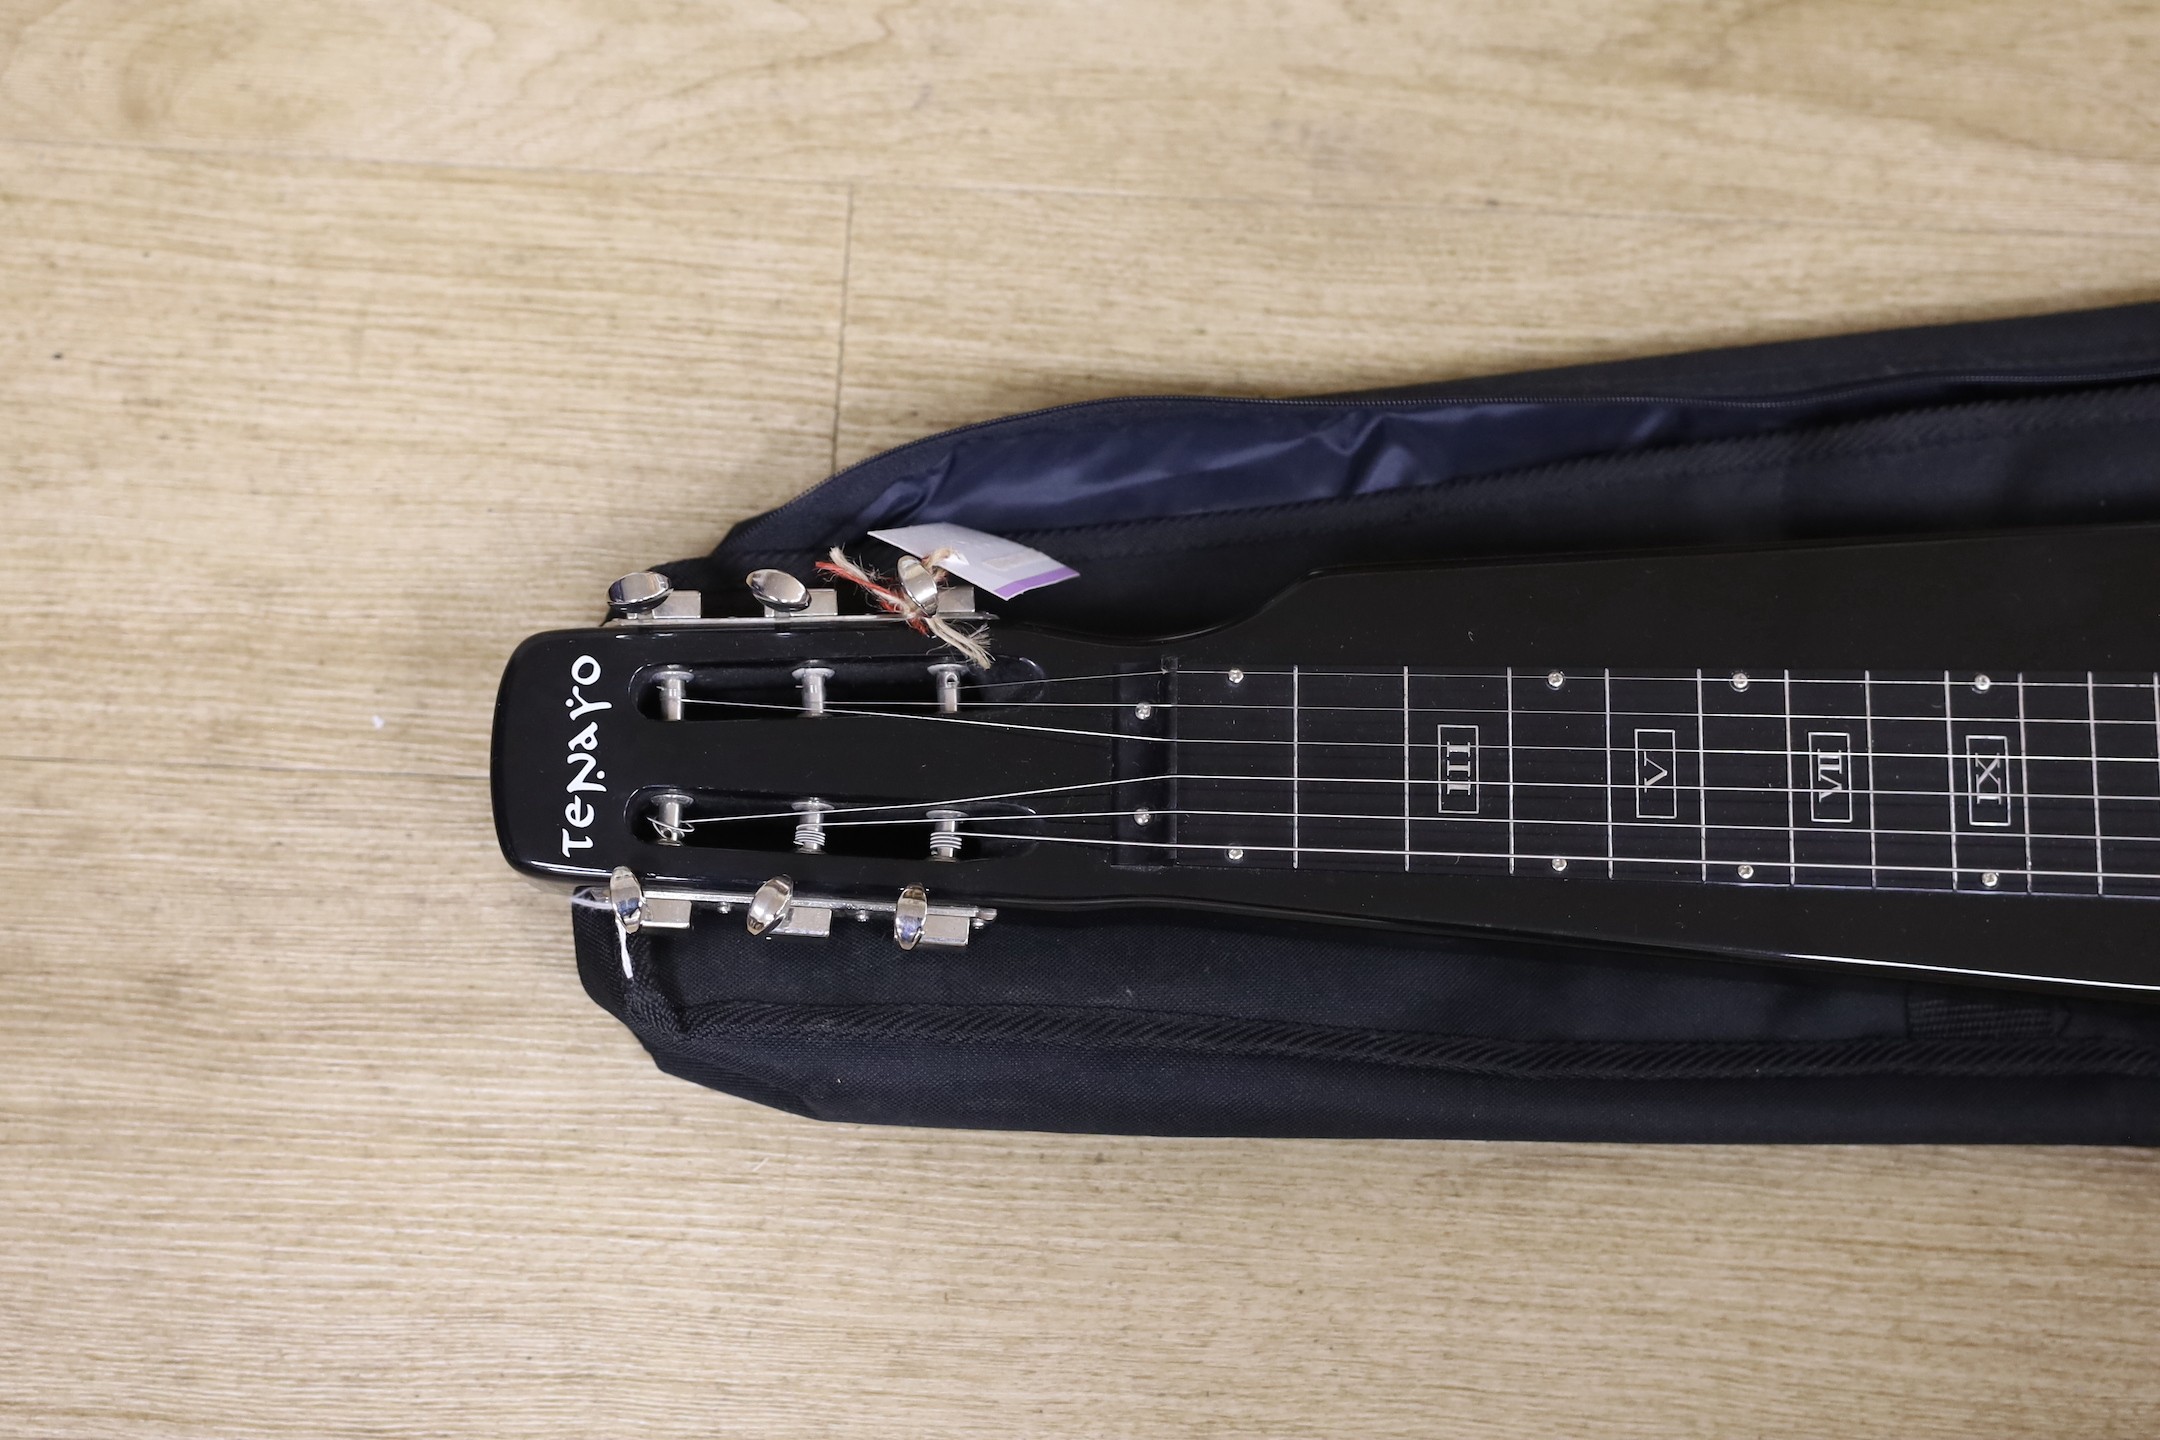 A Tenaro lap steel guitar, 74 cms long.